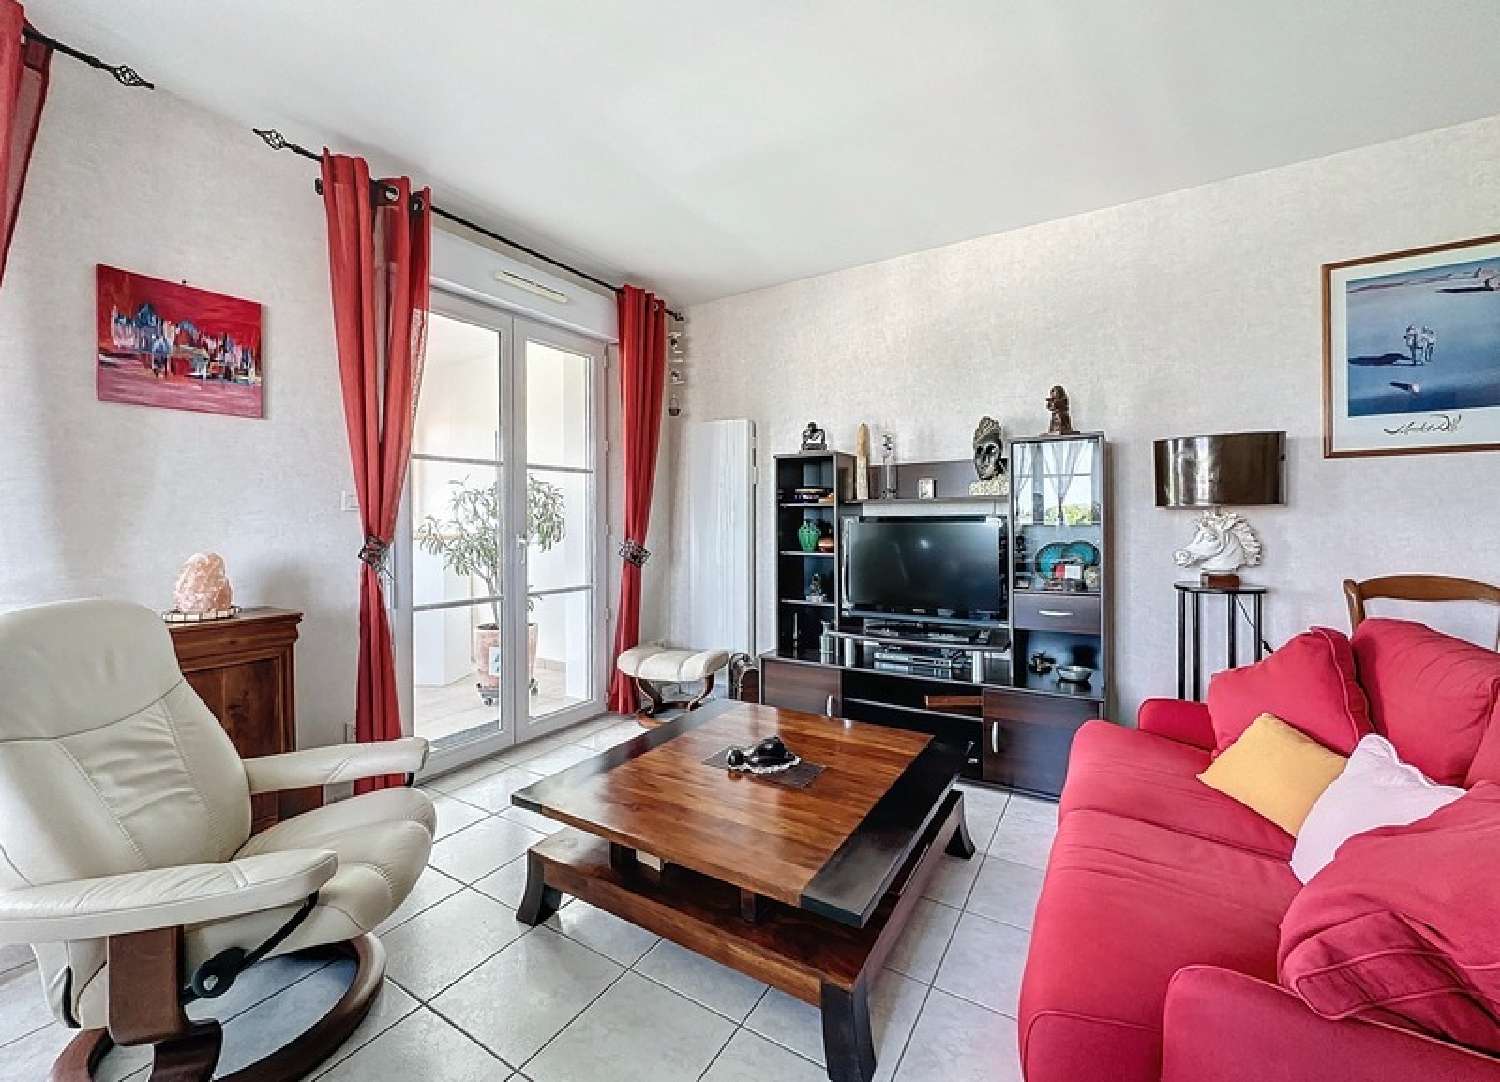  à vendre appartement Chambray-lès-Tours Indre-et-Loire 4